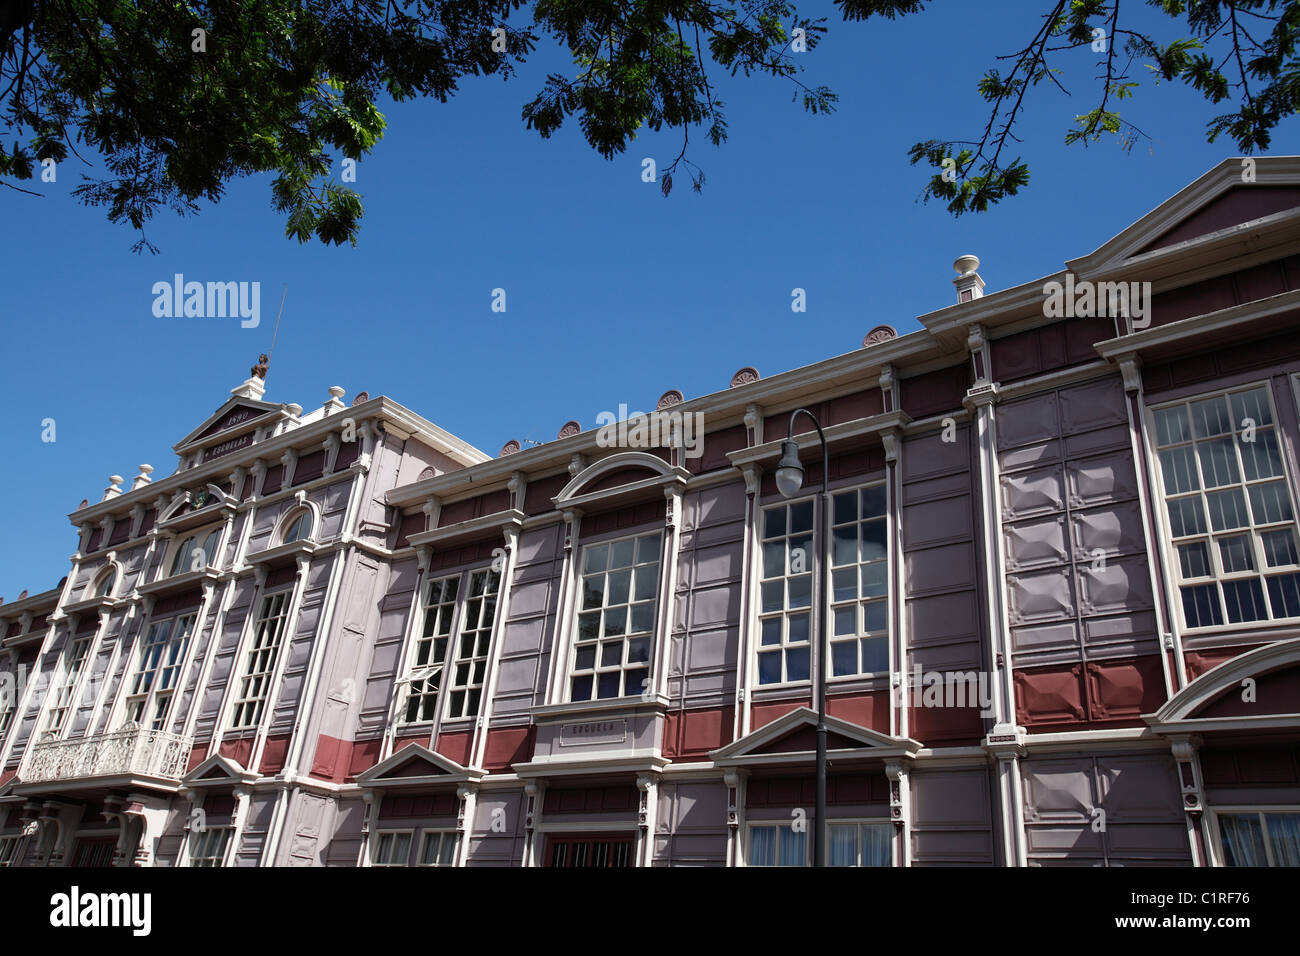 Edificio Metallico, decorative architecture on a school building in San Jose, Costa Rica Stock Photo